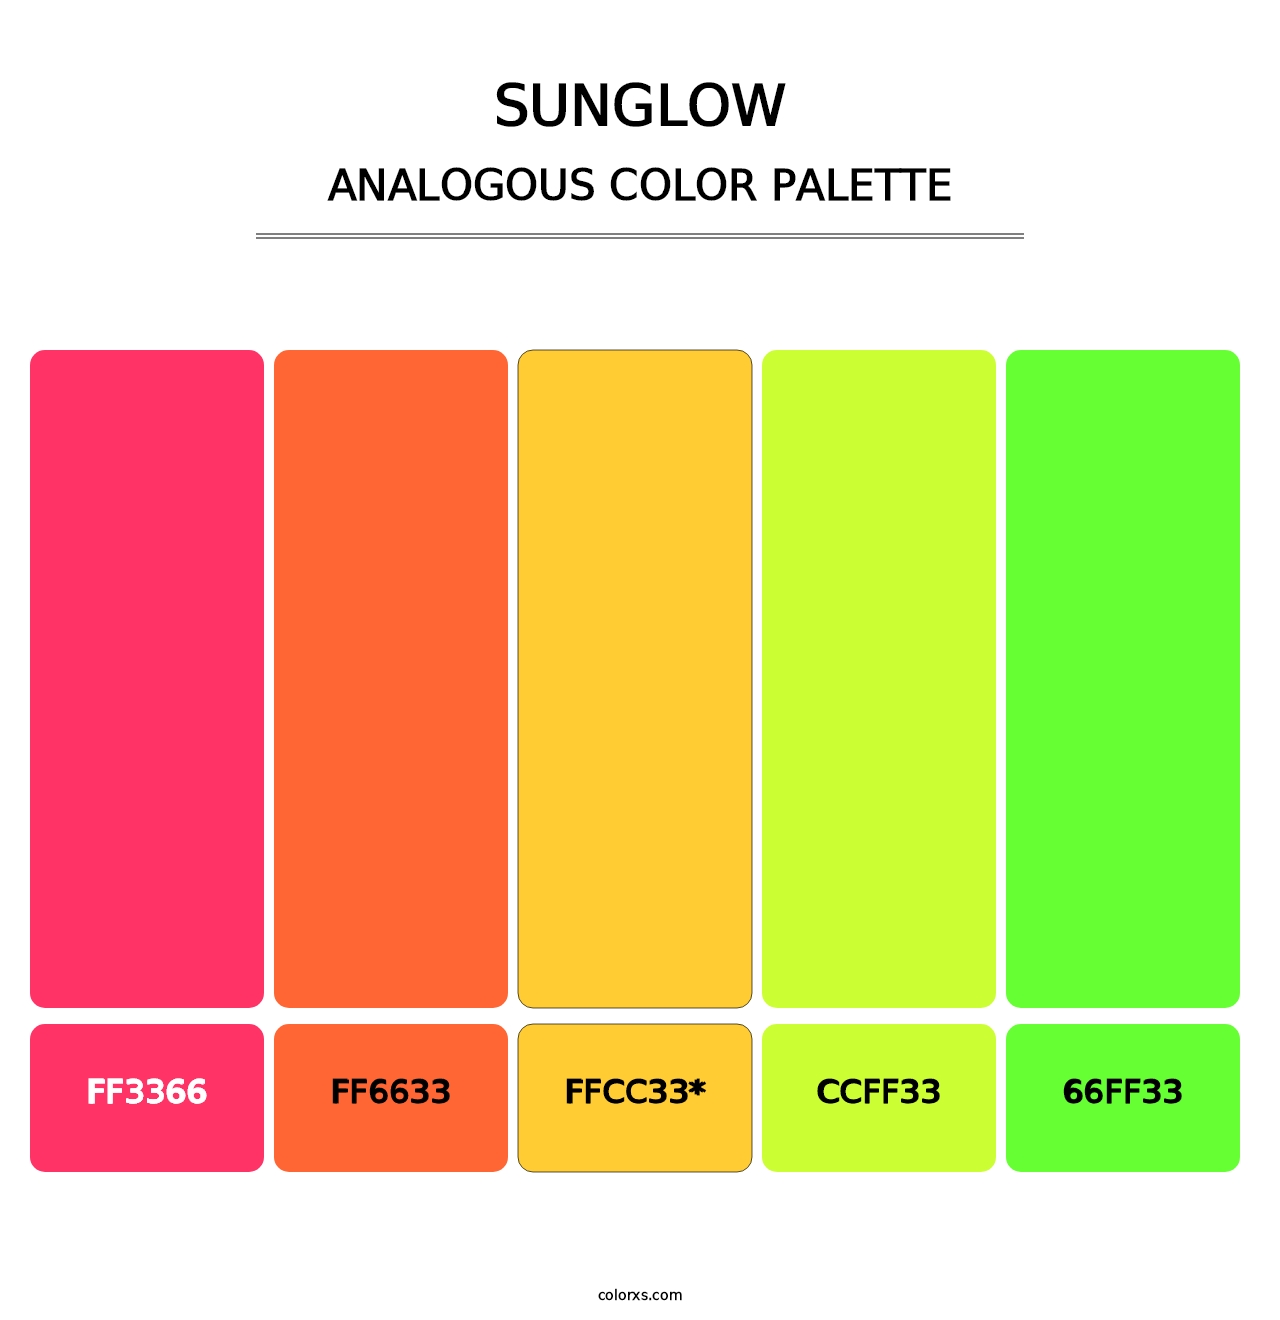 Sunglow - Analogous Color Palette